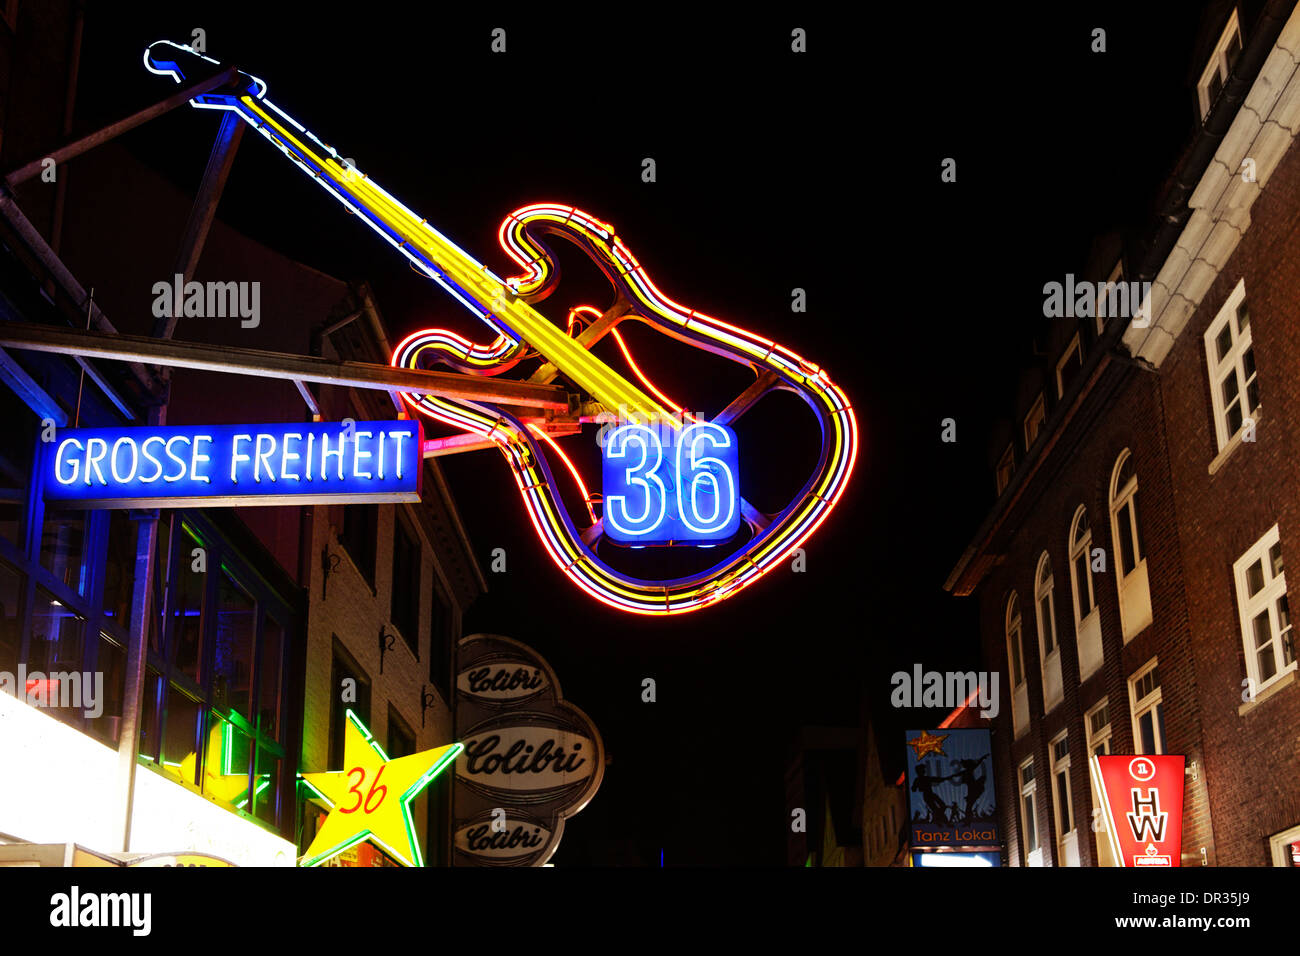 Grosse Freiheit 36, quartier légendaire club, néon, St Pauli, Reeperbahn, Hambourg, Allemagne, Europe Banque D'Images